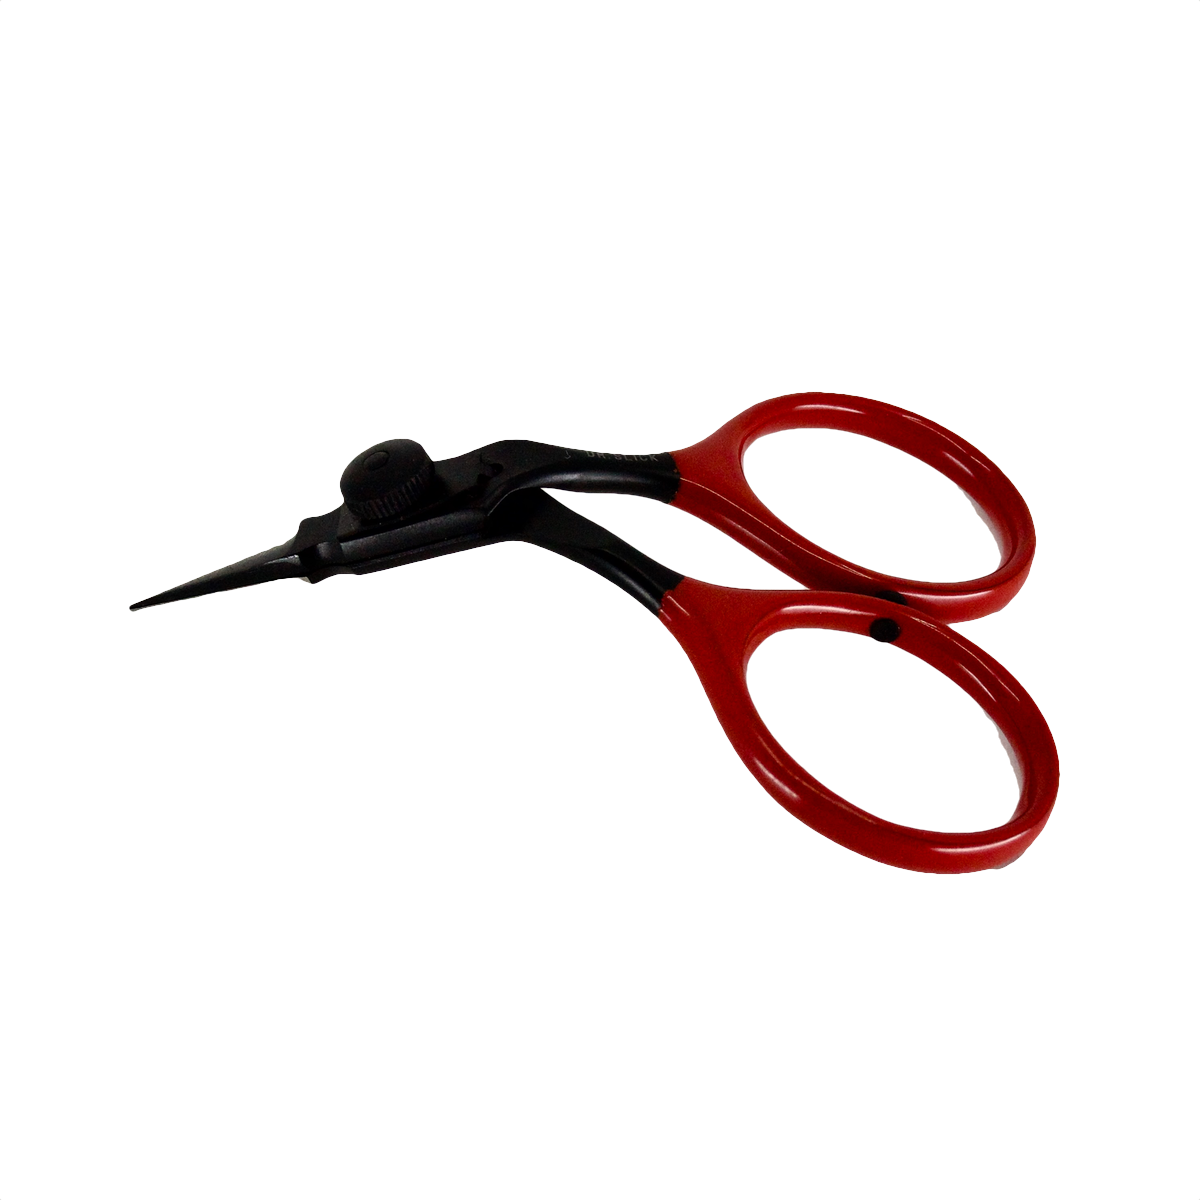 Dr Slick Black Widow Arrow Razor Scissor 3 3/4" Bent Shaft